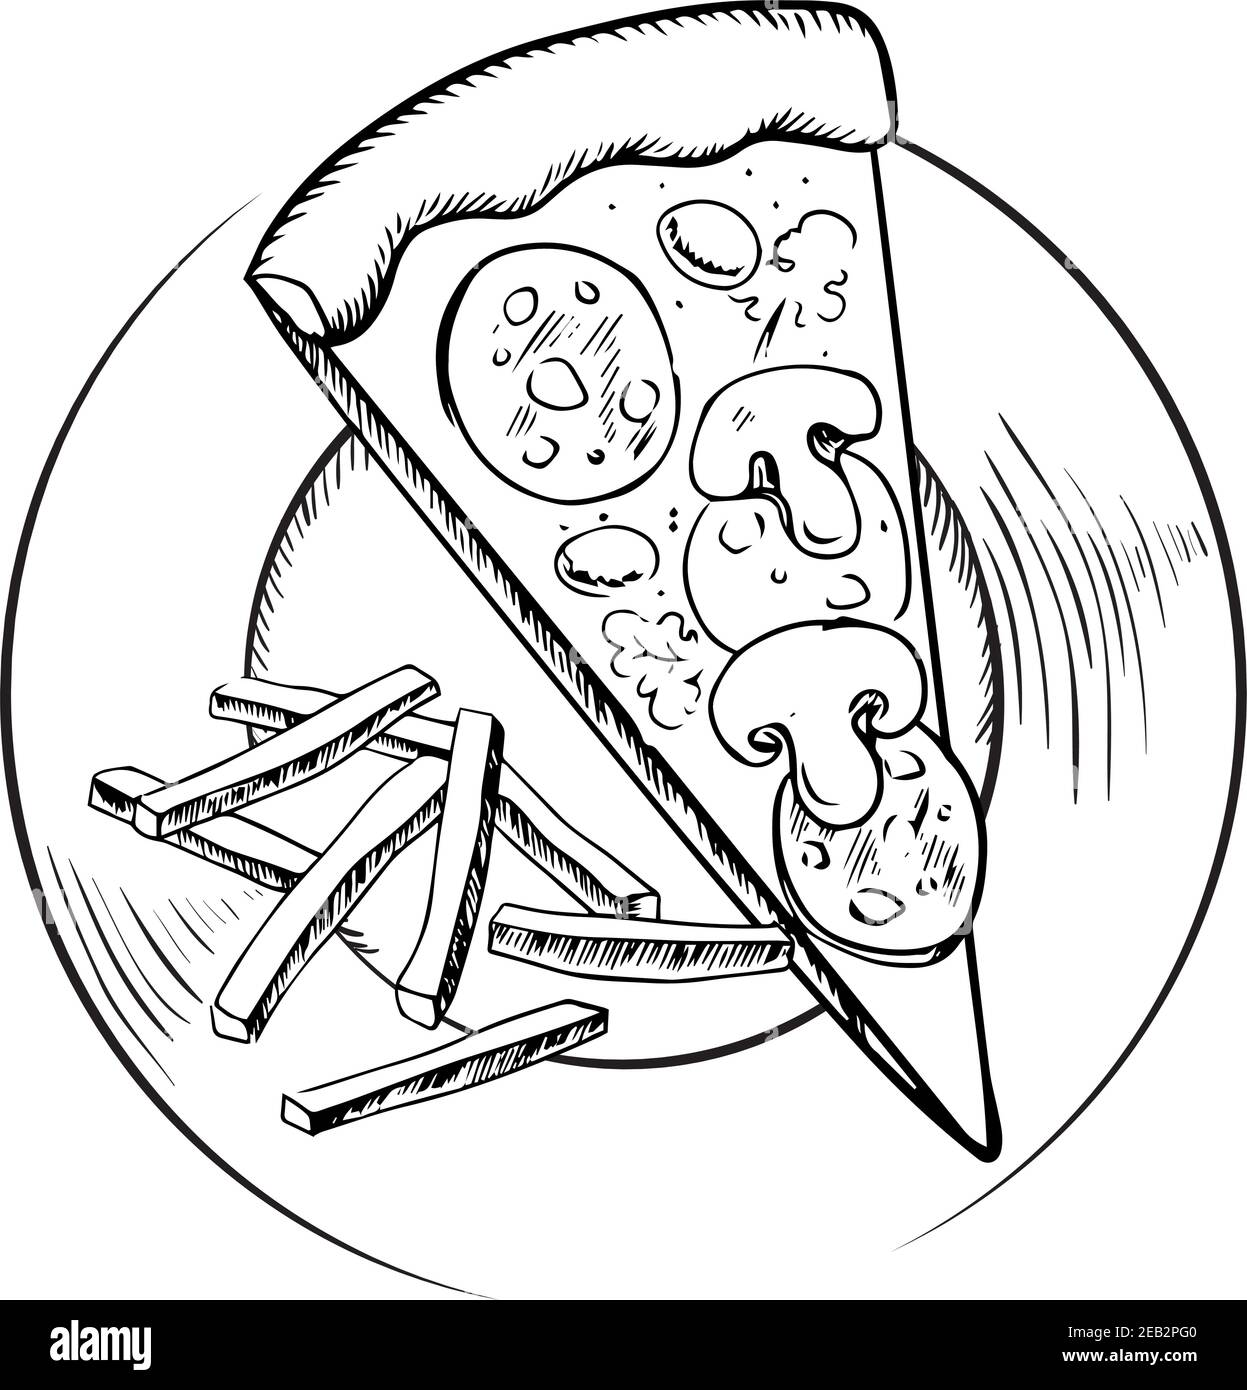 Набросок рисунка пиццы